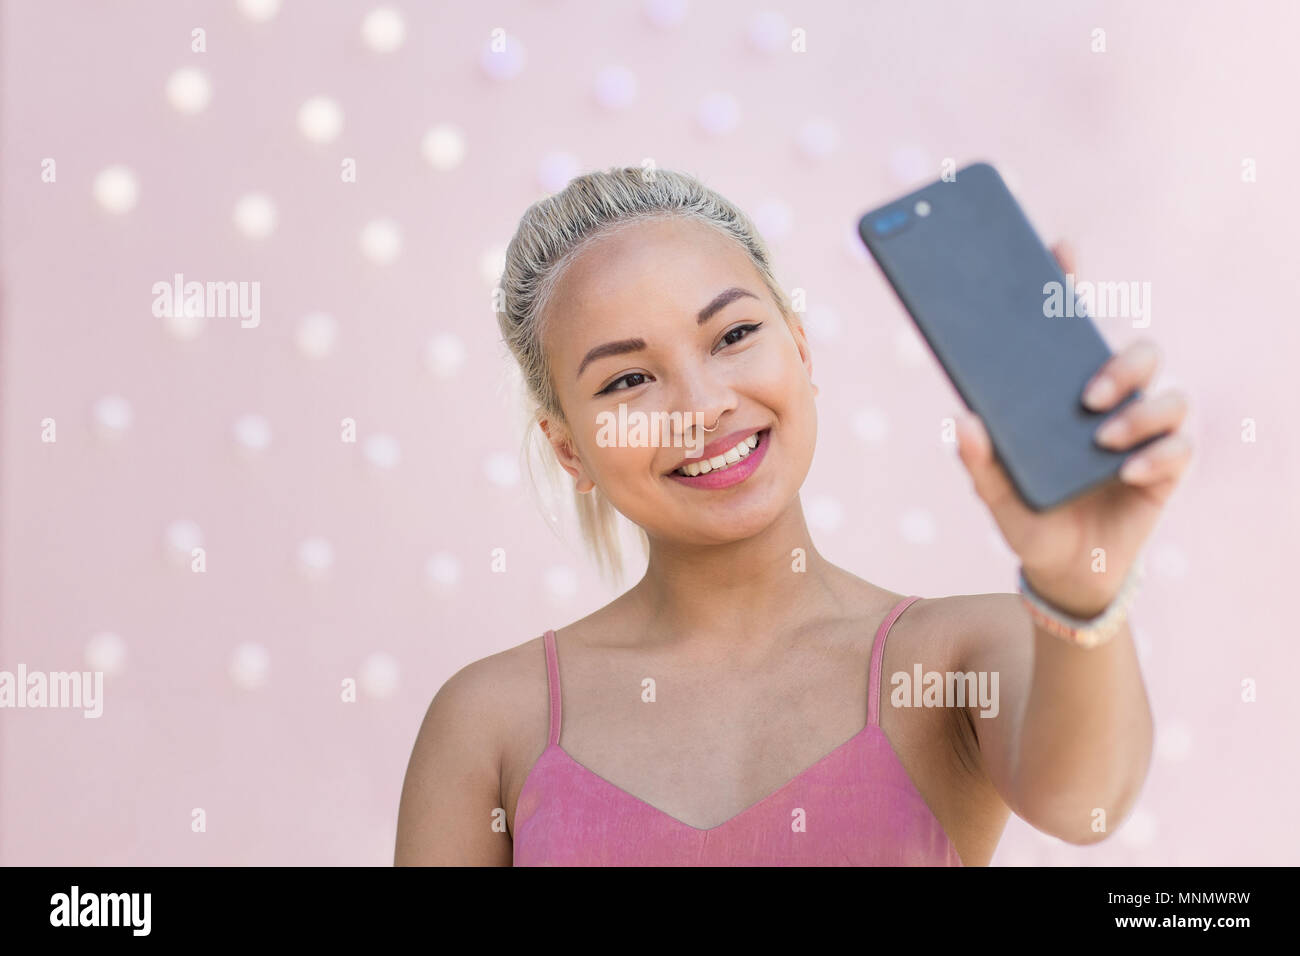 Les jeunes femmes adultes prenant fond rose avec des selfies Banque D'Images